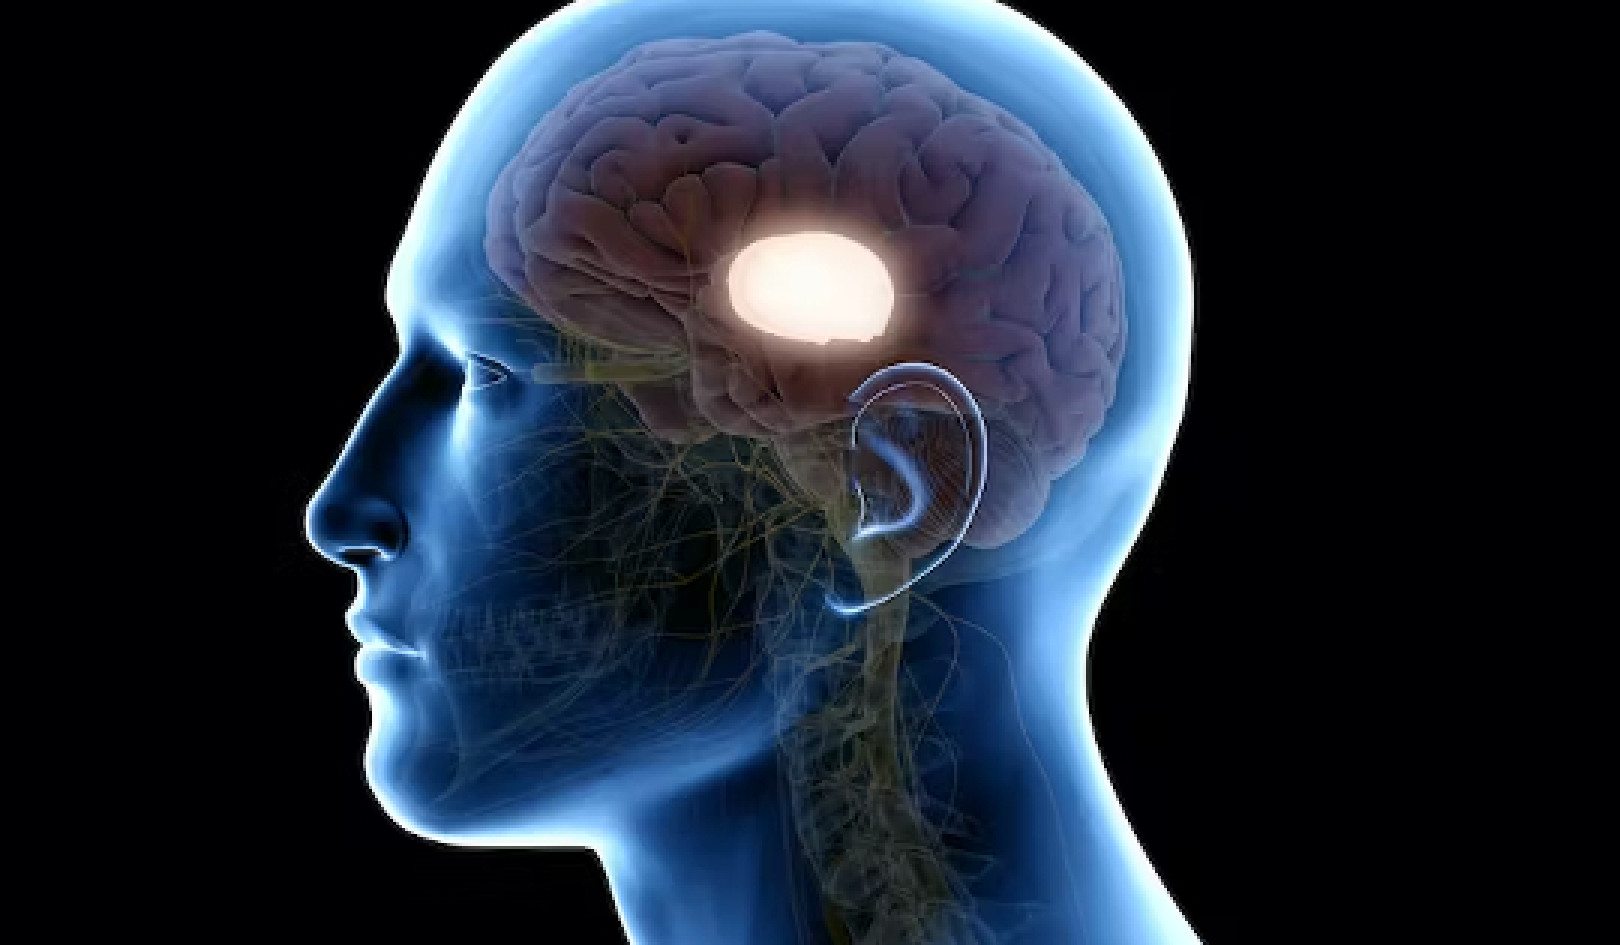 Commozione cerebrale: quasi il 50% ha ancora lesioni cerebrali dopo 6 mesi